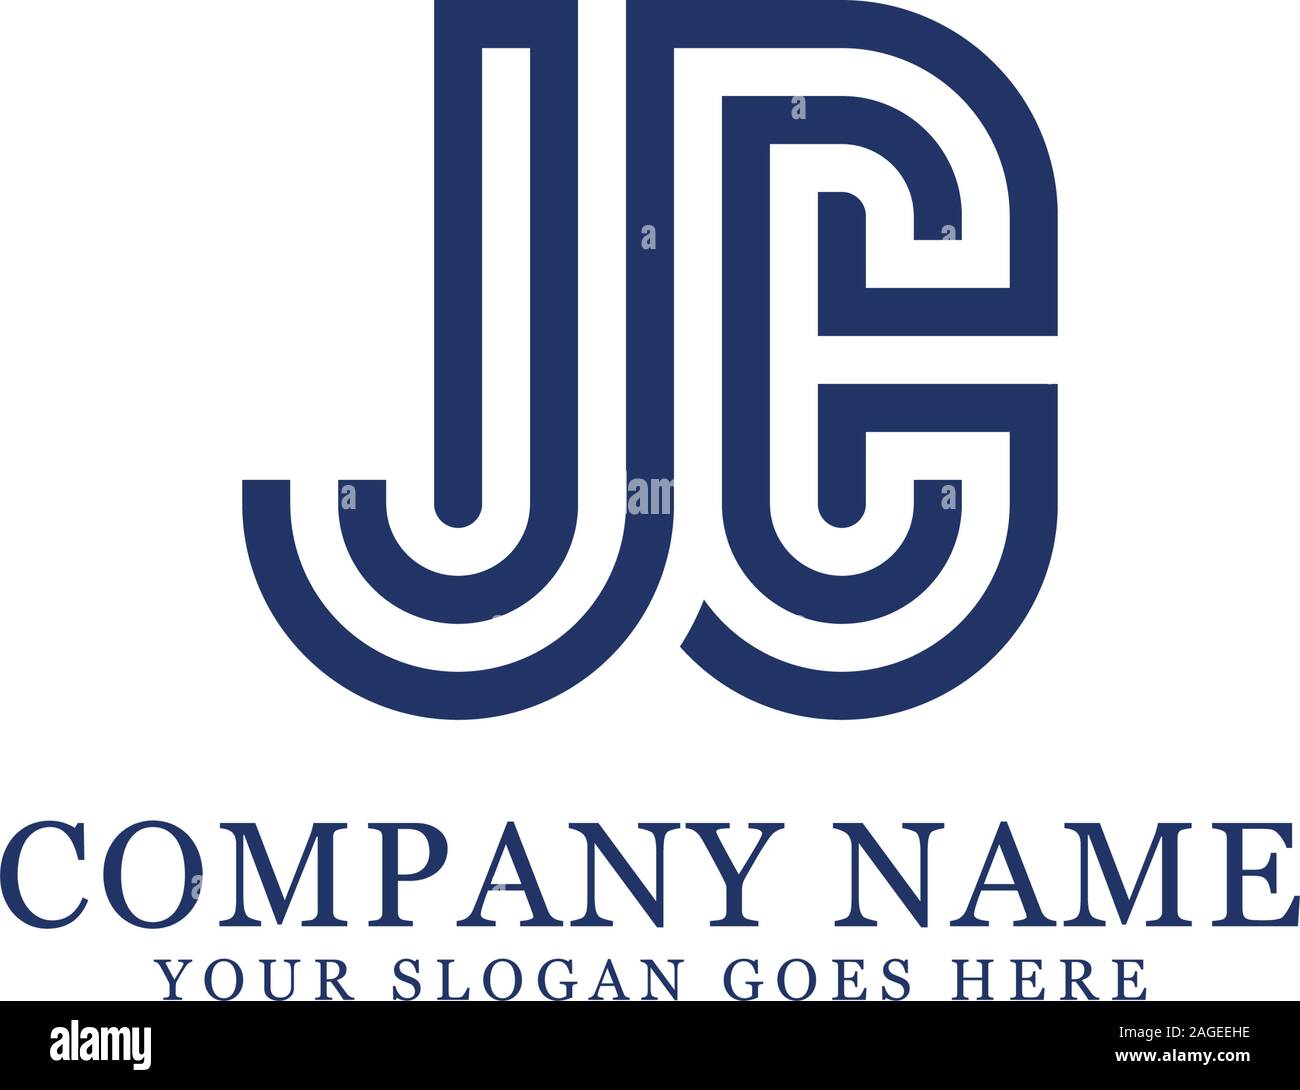 Jc logo Designs, Monogram logo vector Stock Vector